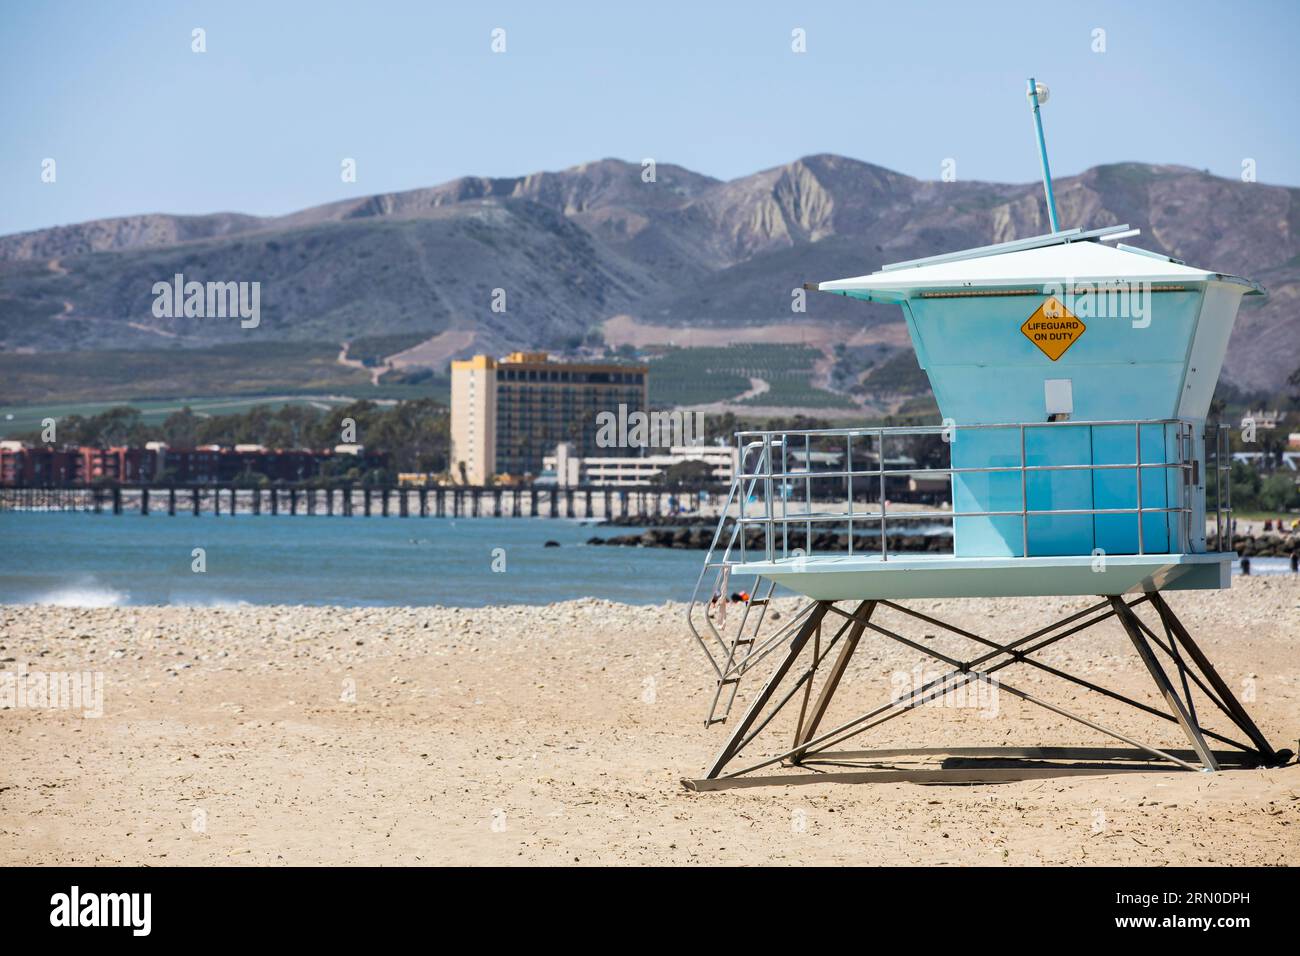 Il sole del pomeriggio splende su una guardia costiera pubblica a Ventura Beach, nel centro di Ventura, California, Stati Uniti. Foto Stock